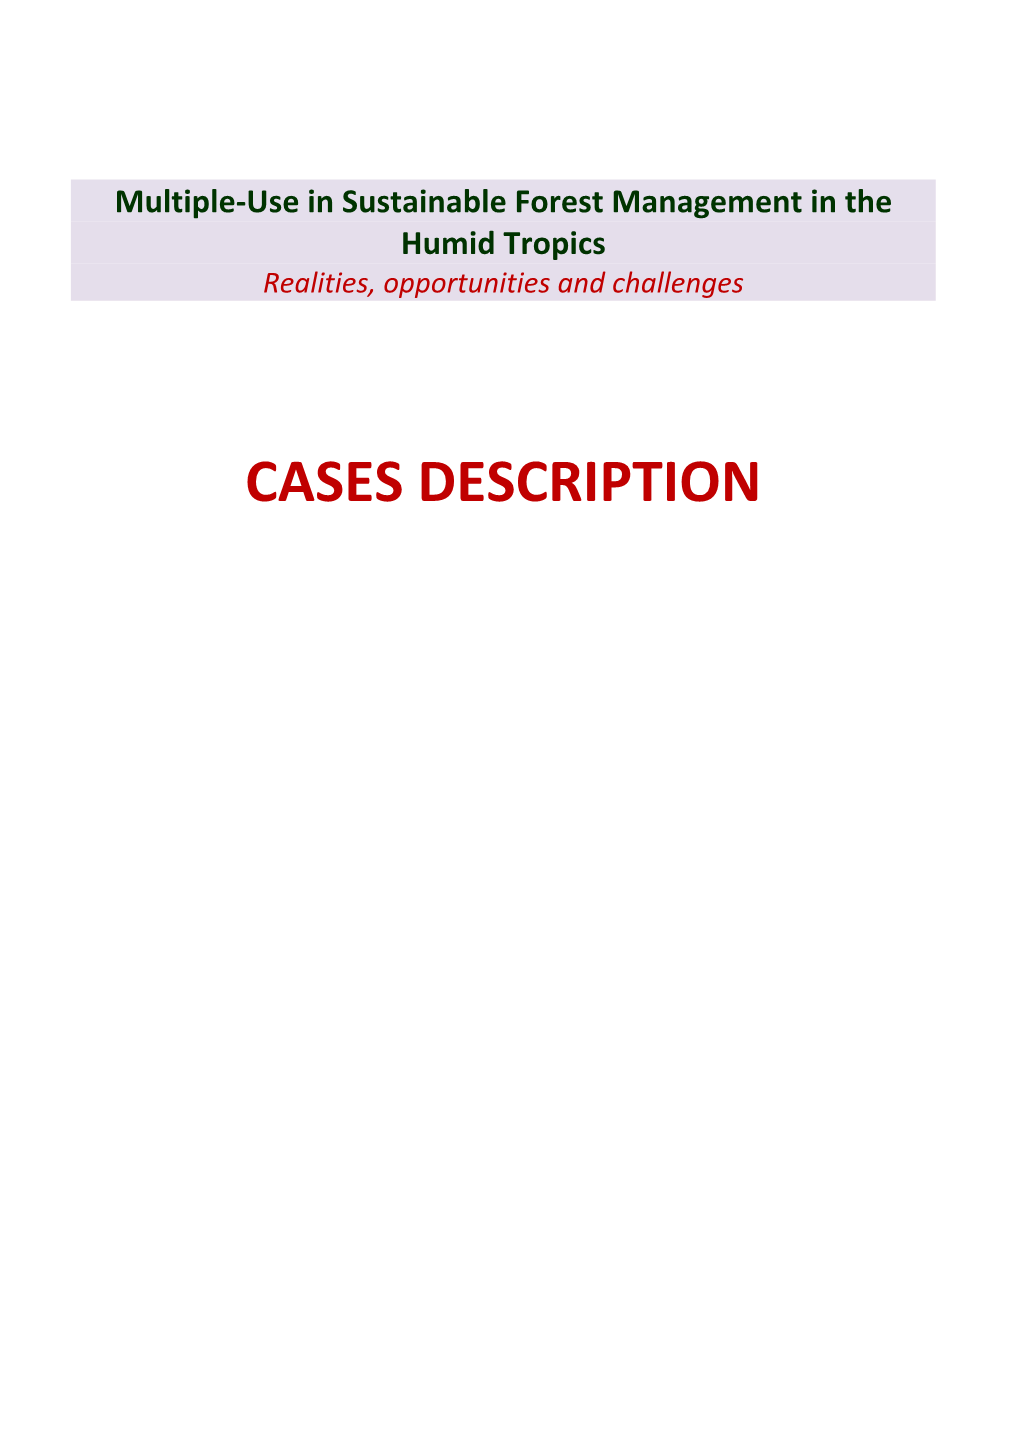 CASES DESCRIPTION CASES DESCRIPTION - LIST of ACRONYMS USED Amazon Basin